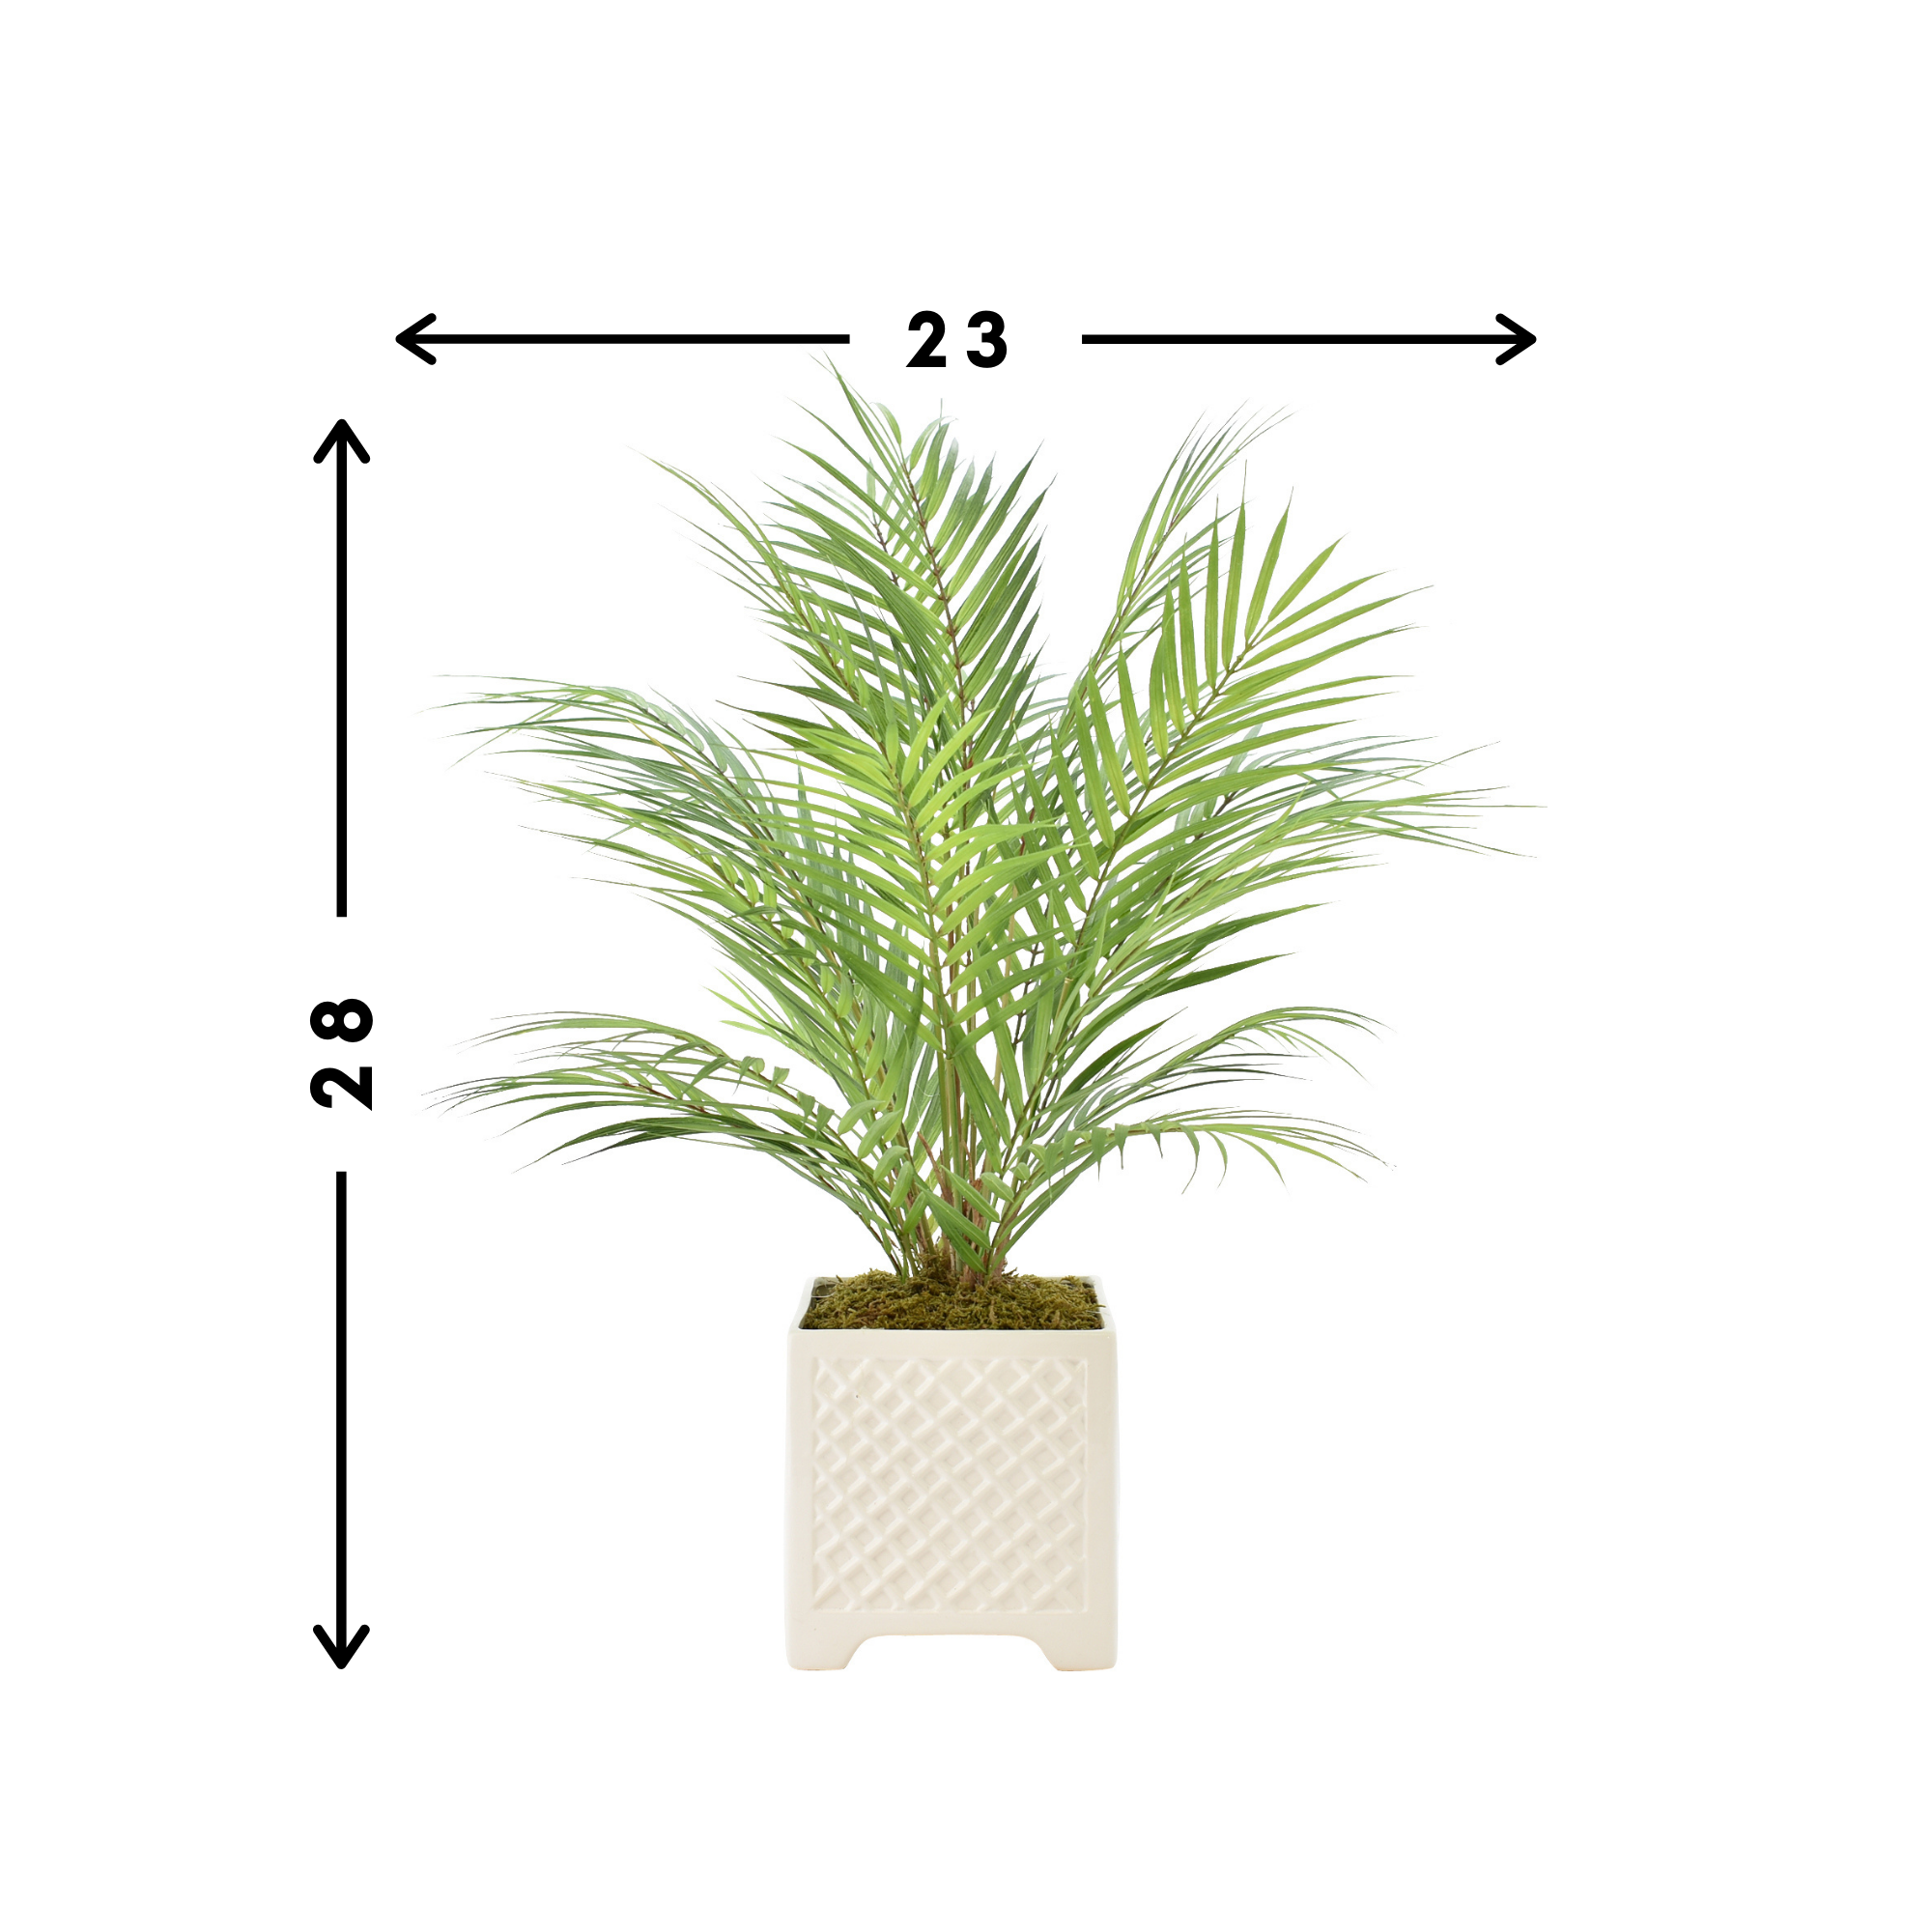 Palm Tree in Ceramic Pot